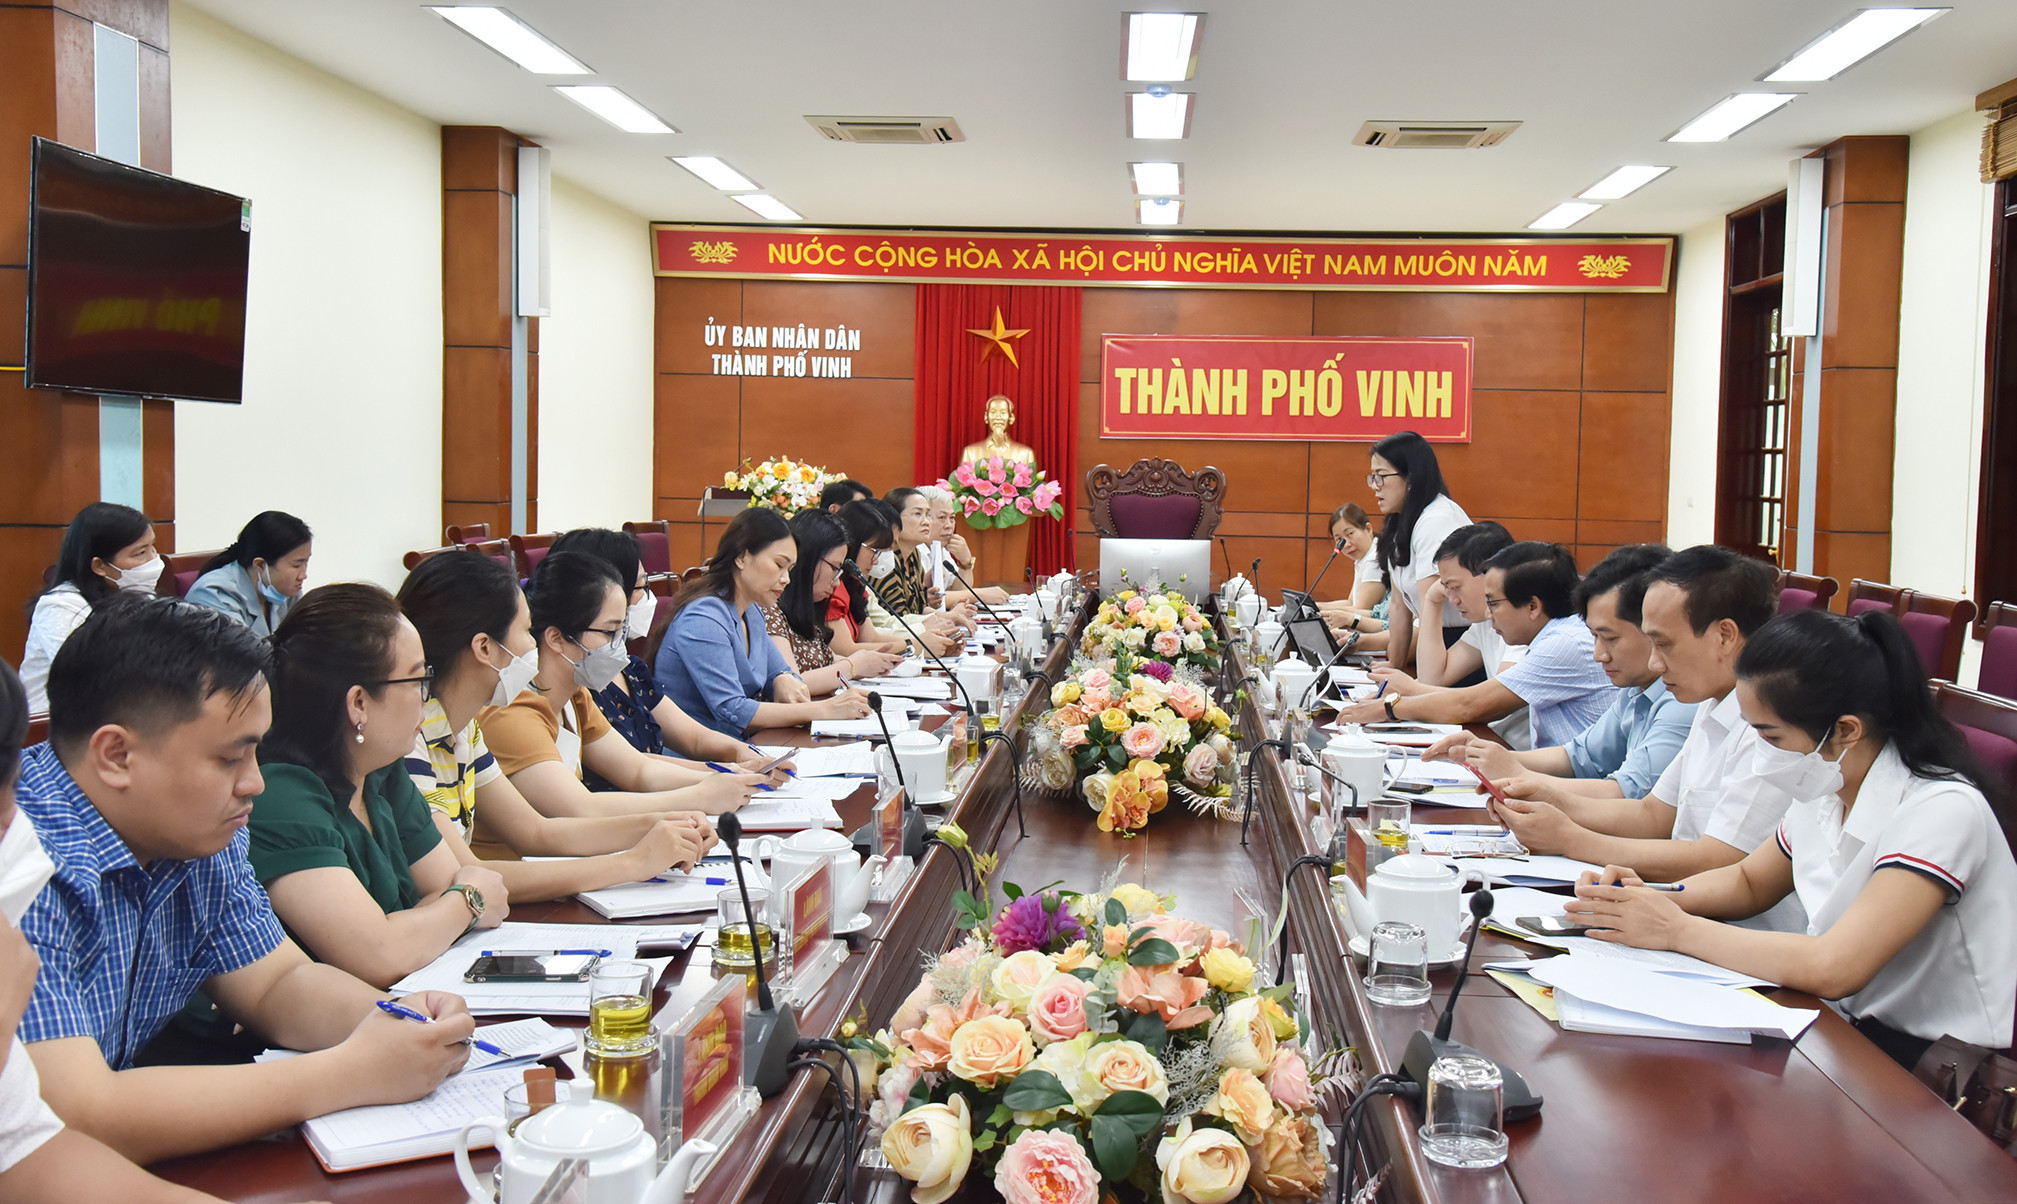 Dự cuộc làm việc có đồng chí Trần Thị Cẩm Tú - Phó Chủ tịch UBND thành phố Vinh cùng đại diện lãnh đạo các phòng, ban. Ảnh: Thanh Lê